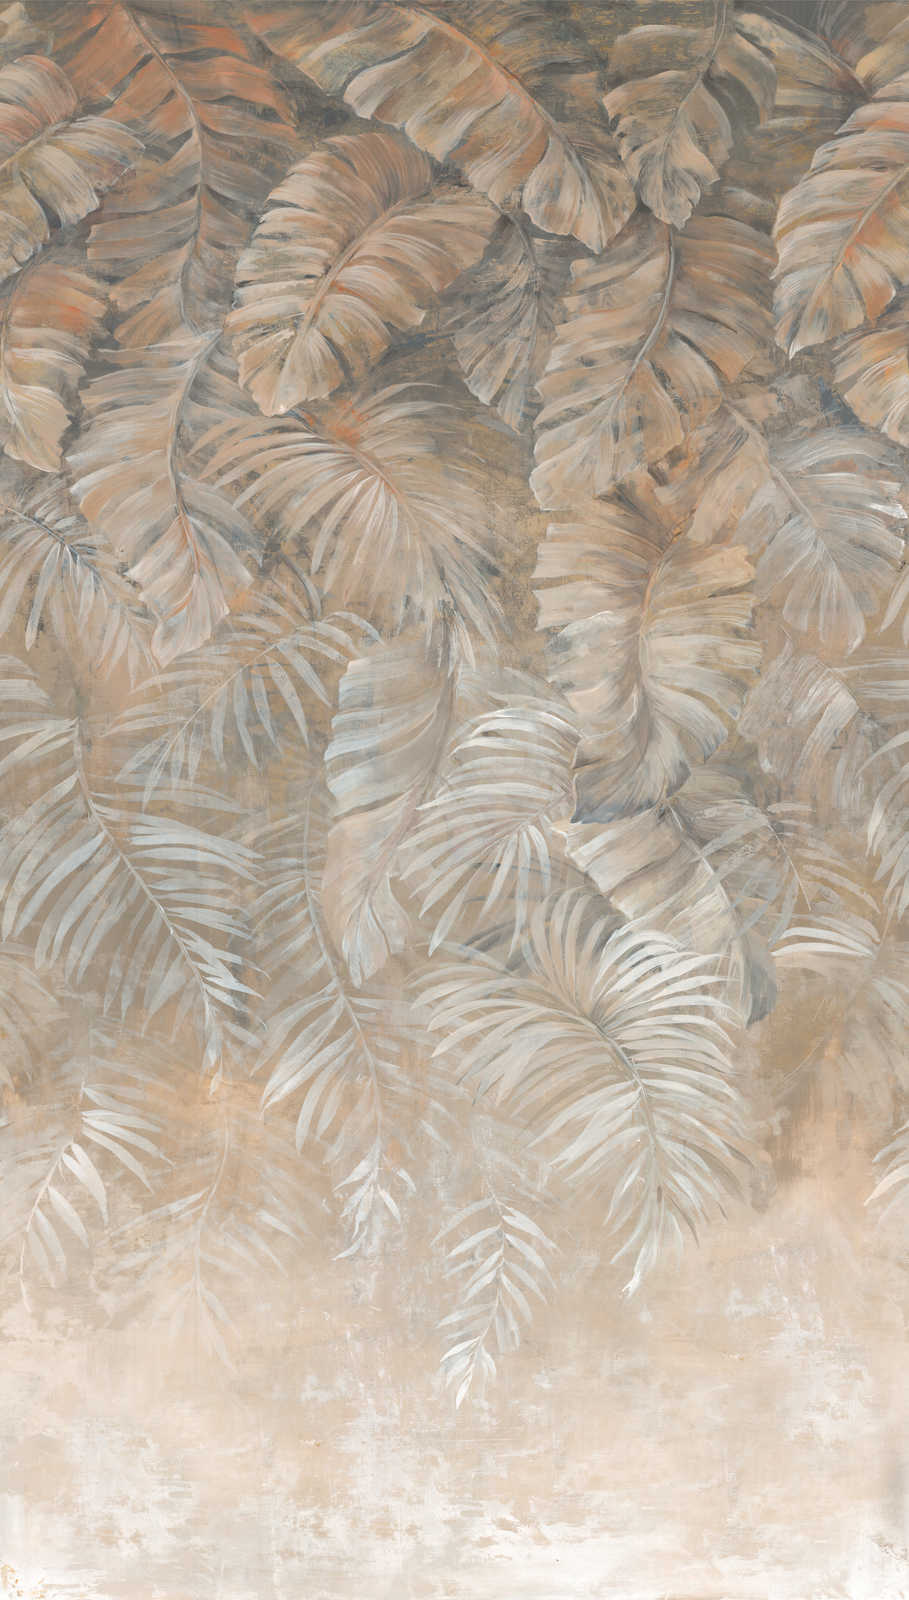             Carta da parati con grandi foglie di palma nelle delicate tonalità della terra: marrone, beige e crema.
        